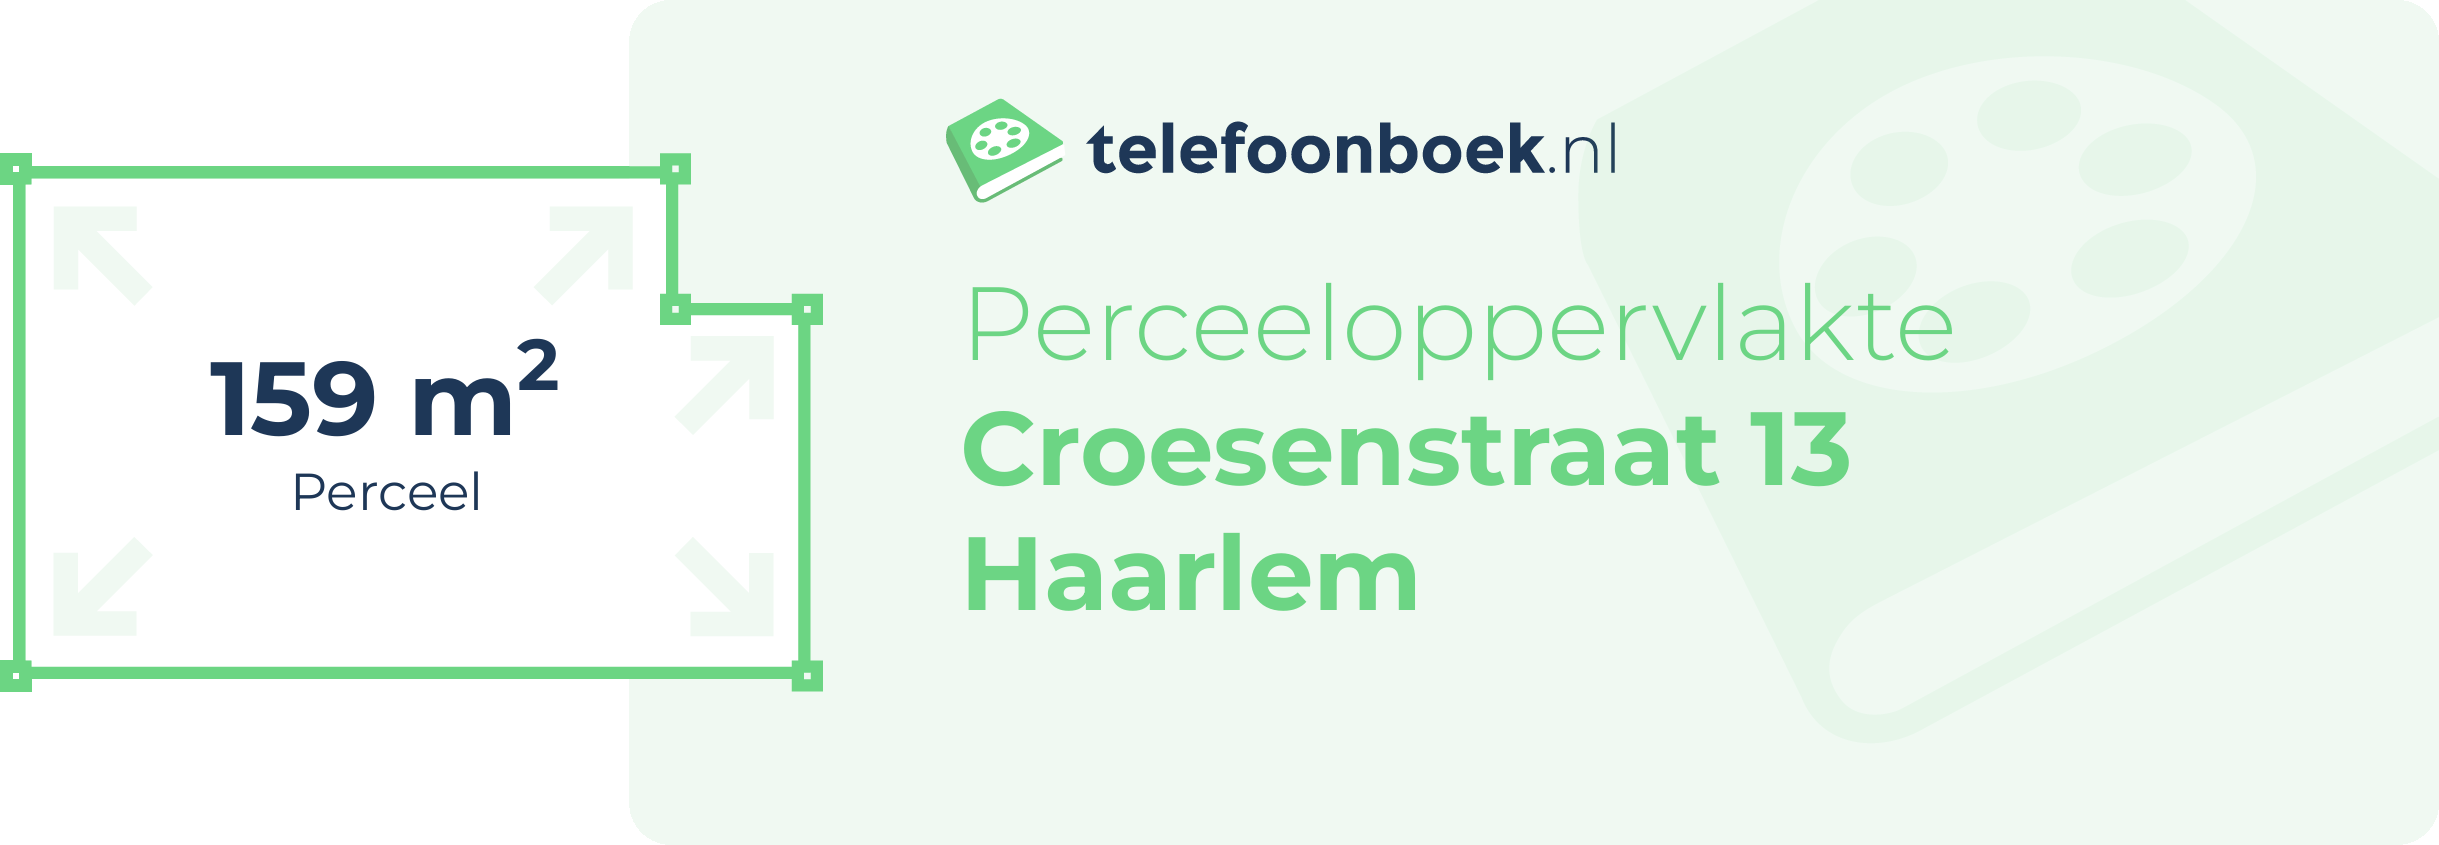 Perceeloppervlakte Croesenstraat 13 Haarlem